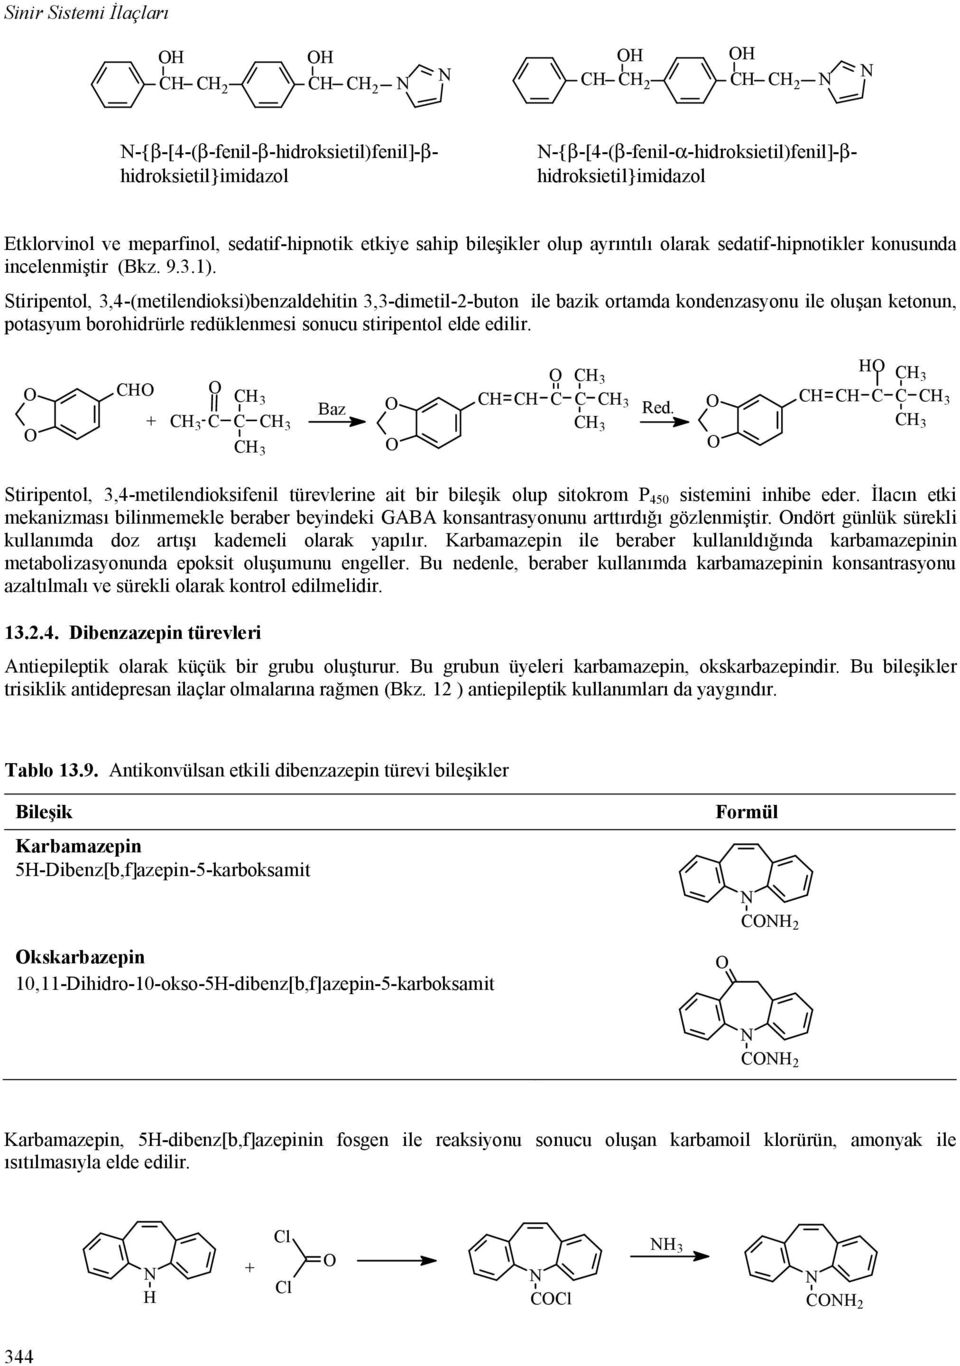 Stiripentol,,4-(metilendioksi)benzaldehitin,-dimetil-2-buton ile bazik ortamda kondenzasyonu ile olu an ketonun, potasyum borohidrürle redüklenmesi sonucu stiripentol elde edilir. + Baz ed.